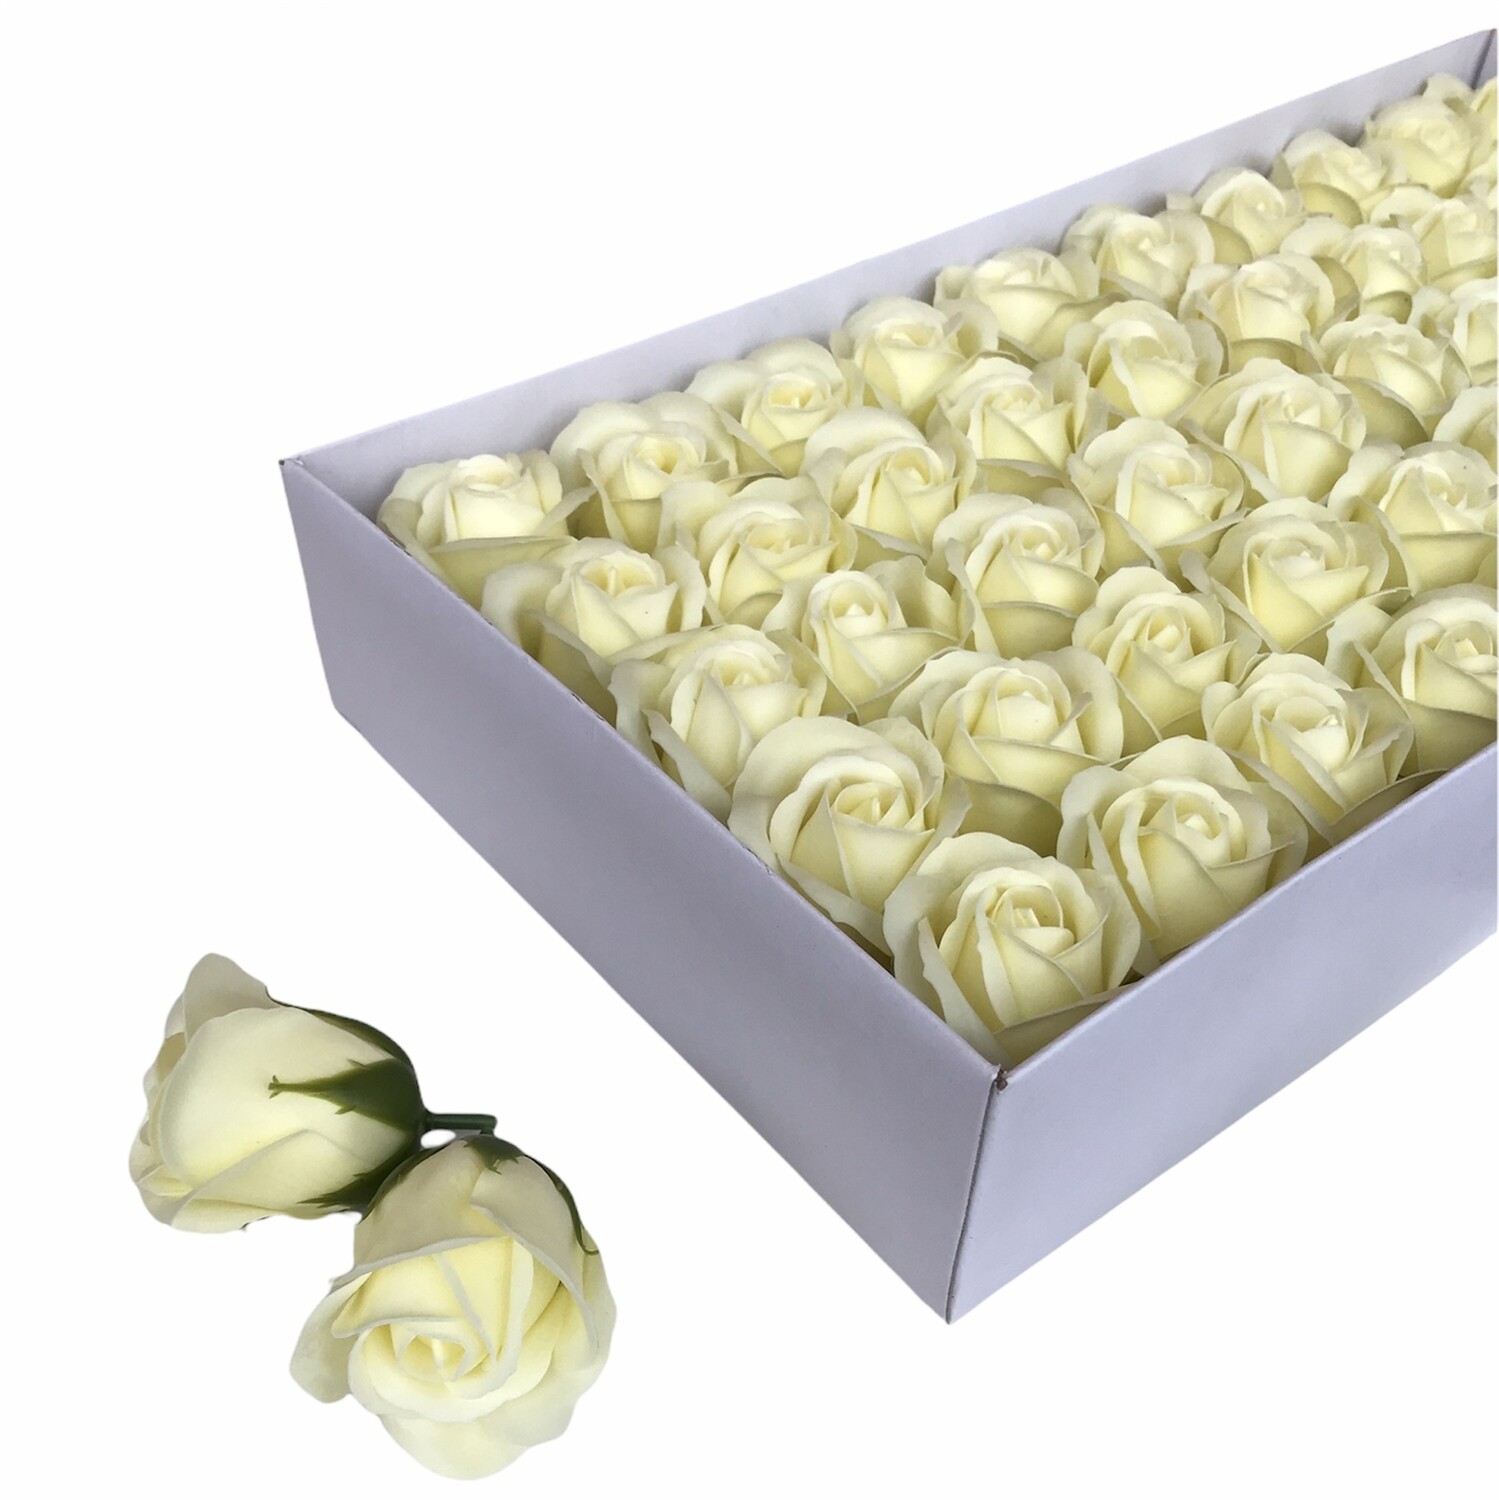 Мыльные розы, цвет - ШАМПАНЬ, размер 5х5 см, в упаковке 50 шт